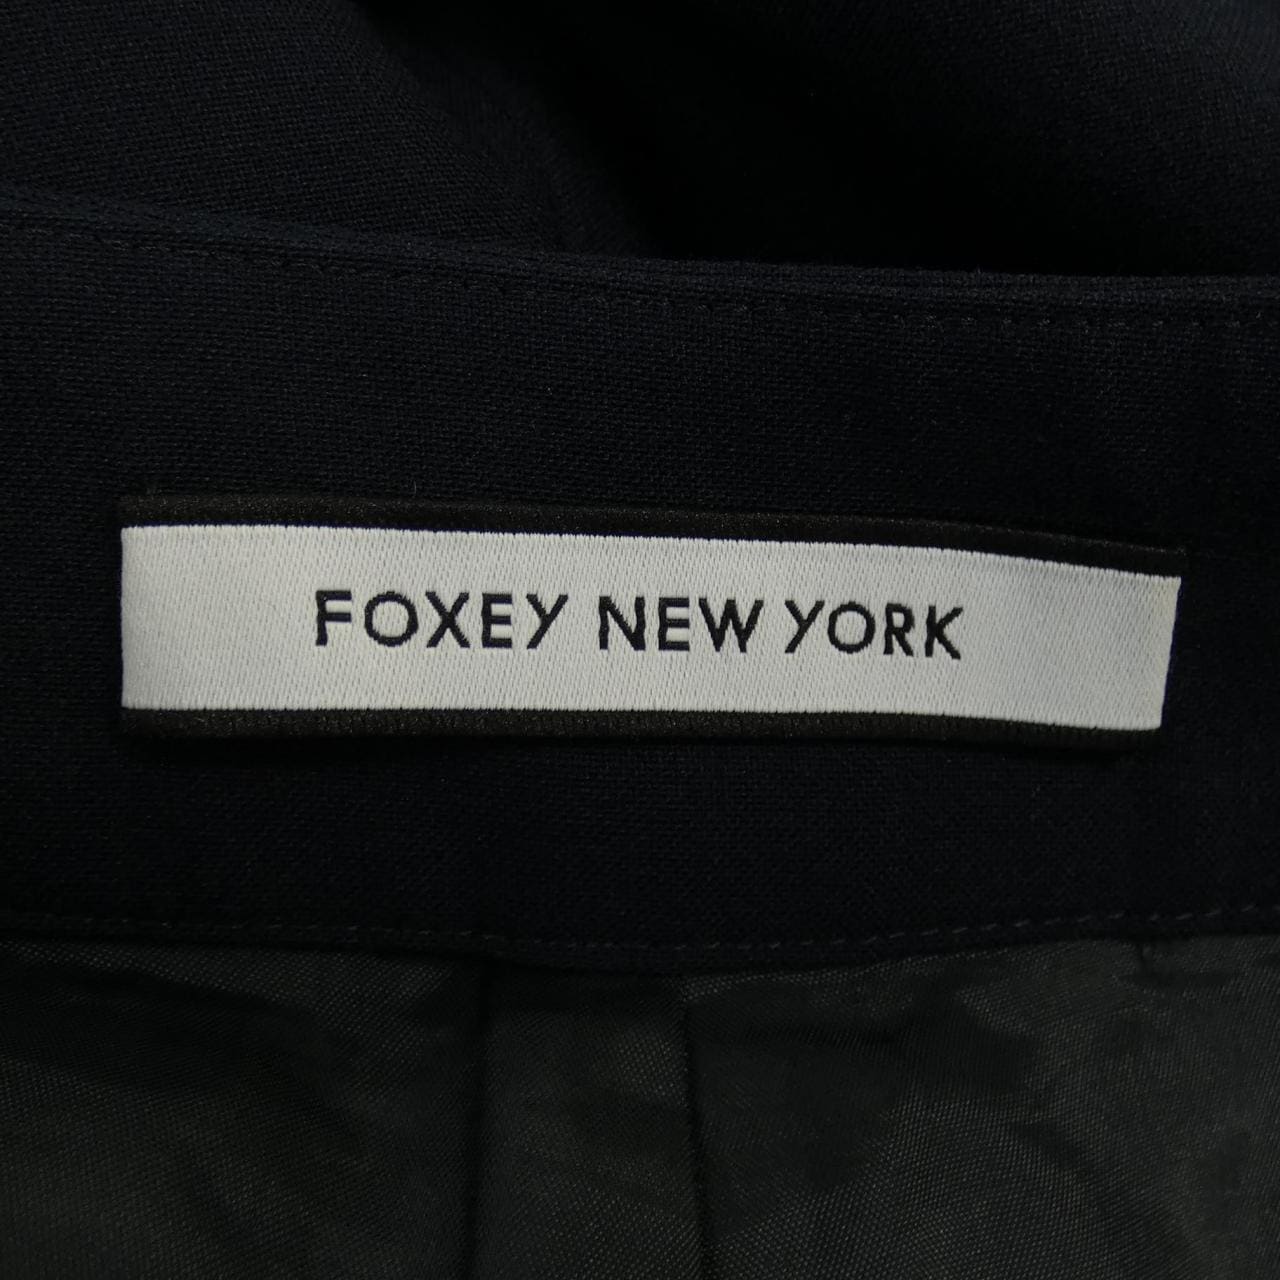 福西纽约FOXEY NEW YORK裤子